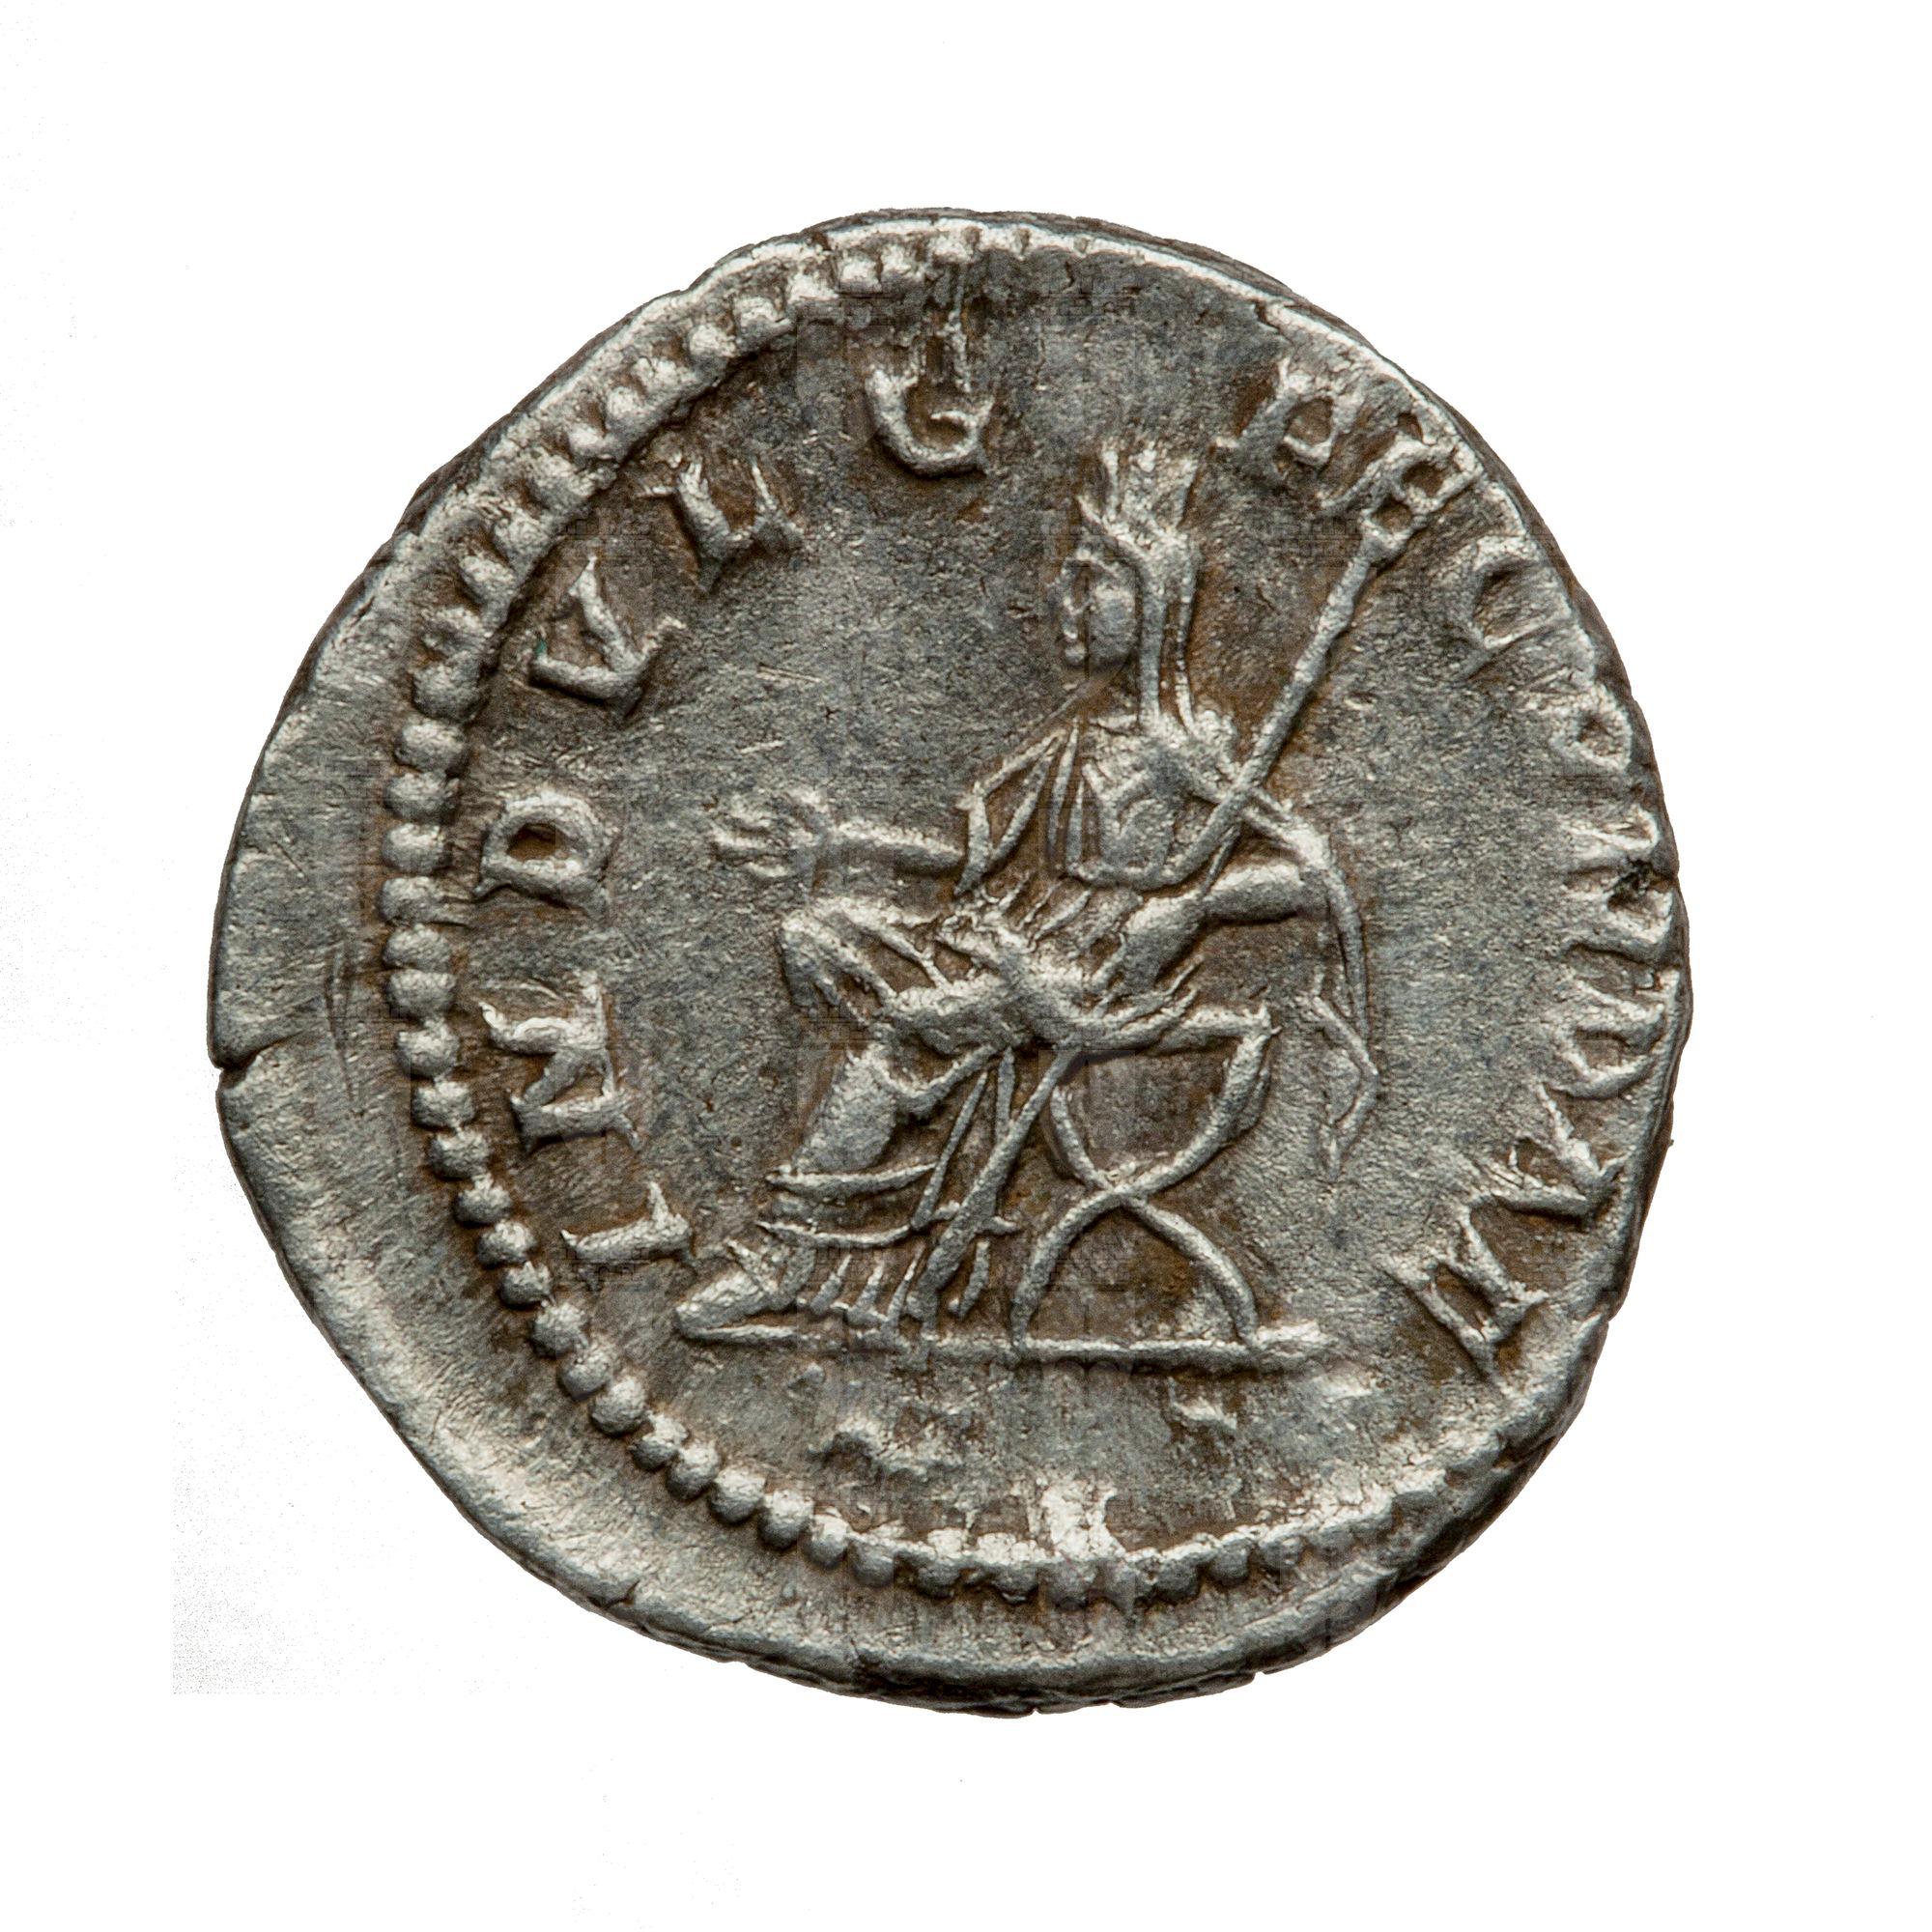 https://catalogomusei.comune.trieste.it/samira/resource/image/reperti-archeologici/Roma 1243 R Caracalla.jpg?token=65e6b944bbc2d